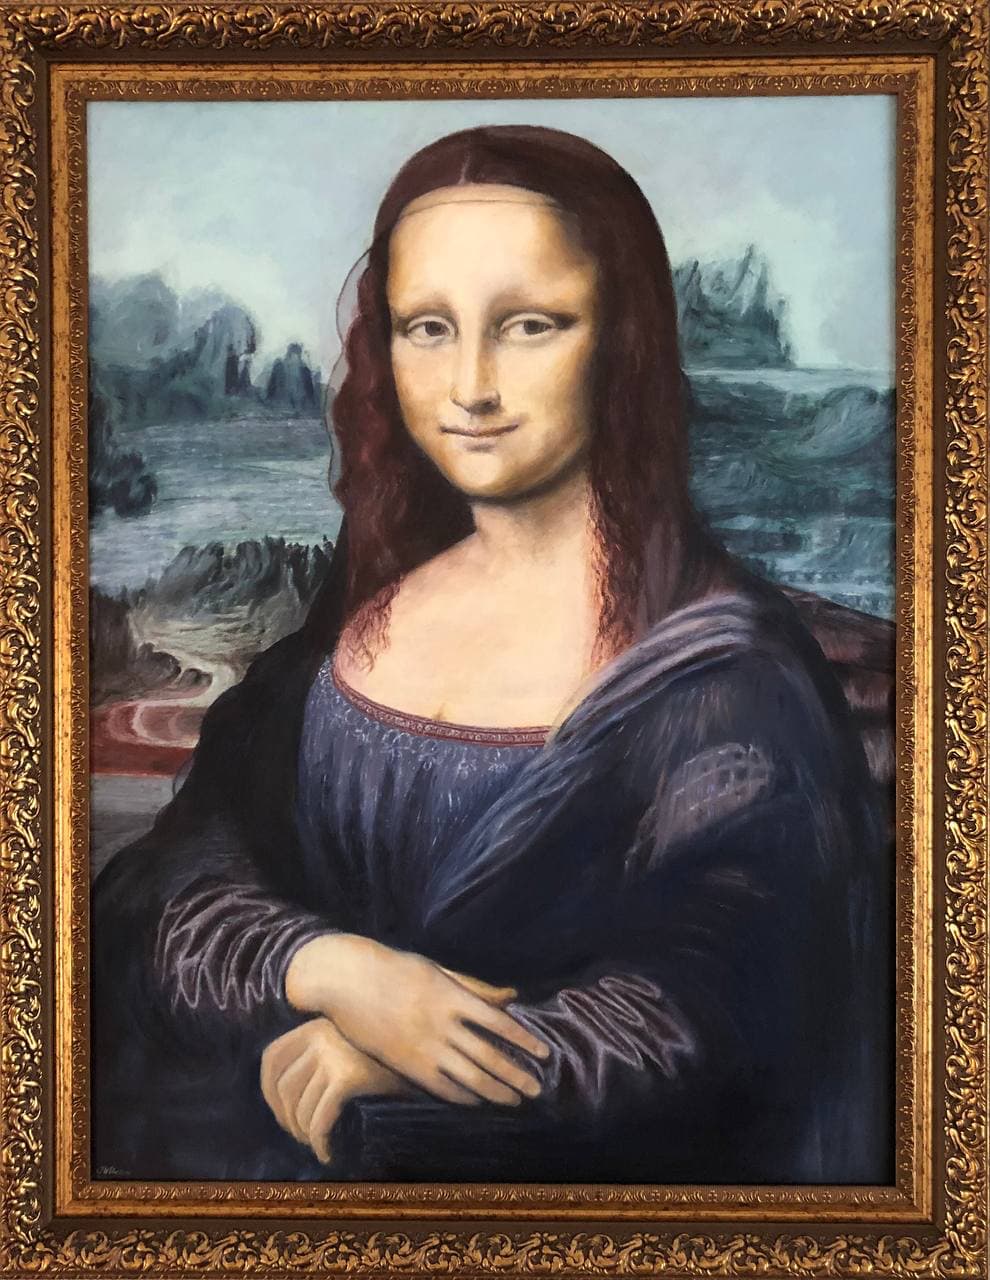 Джоконда-копия самой известной картины кисти Леонардо да Винчи.